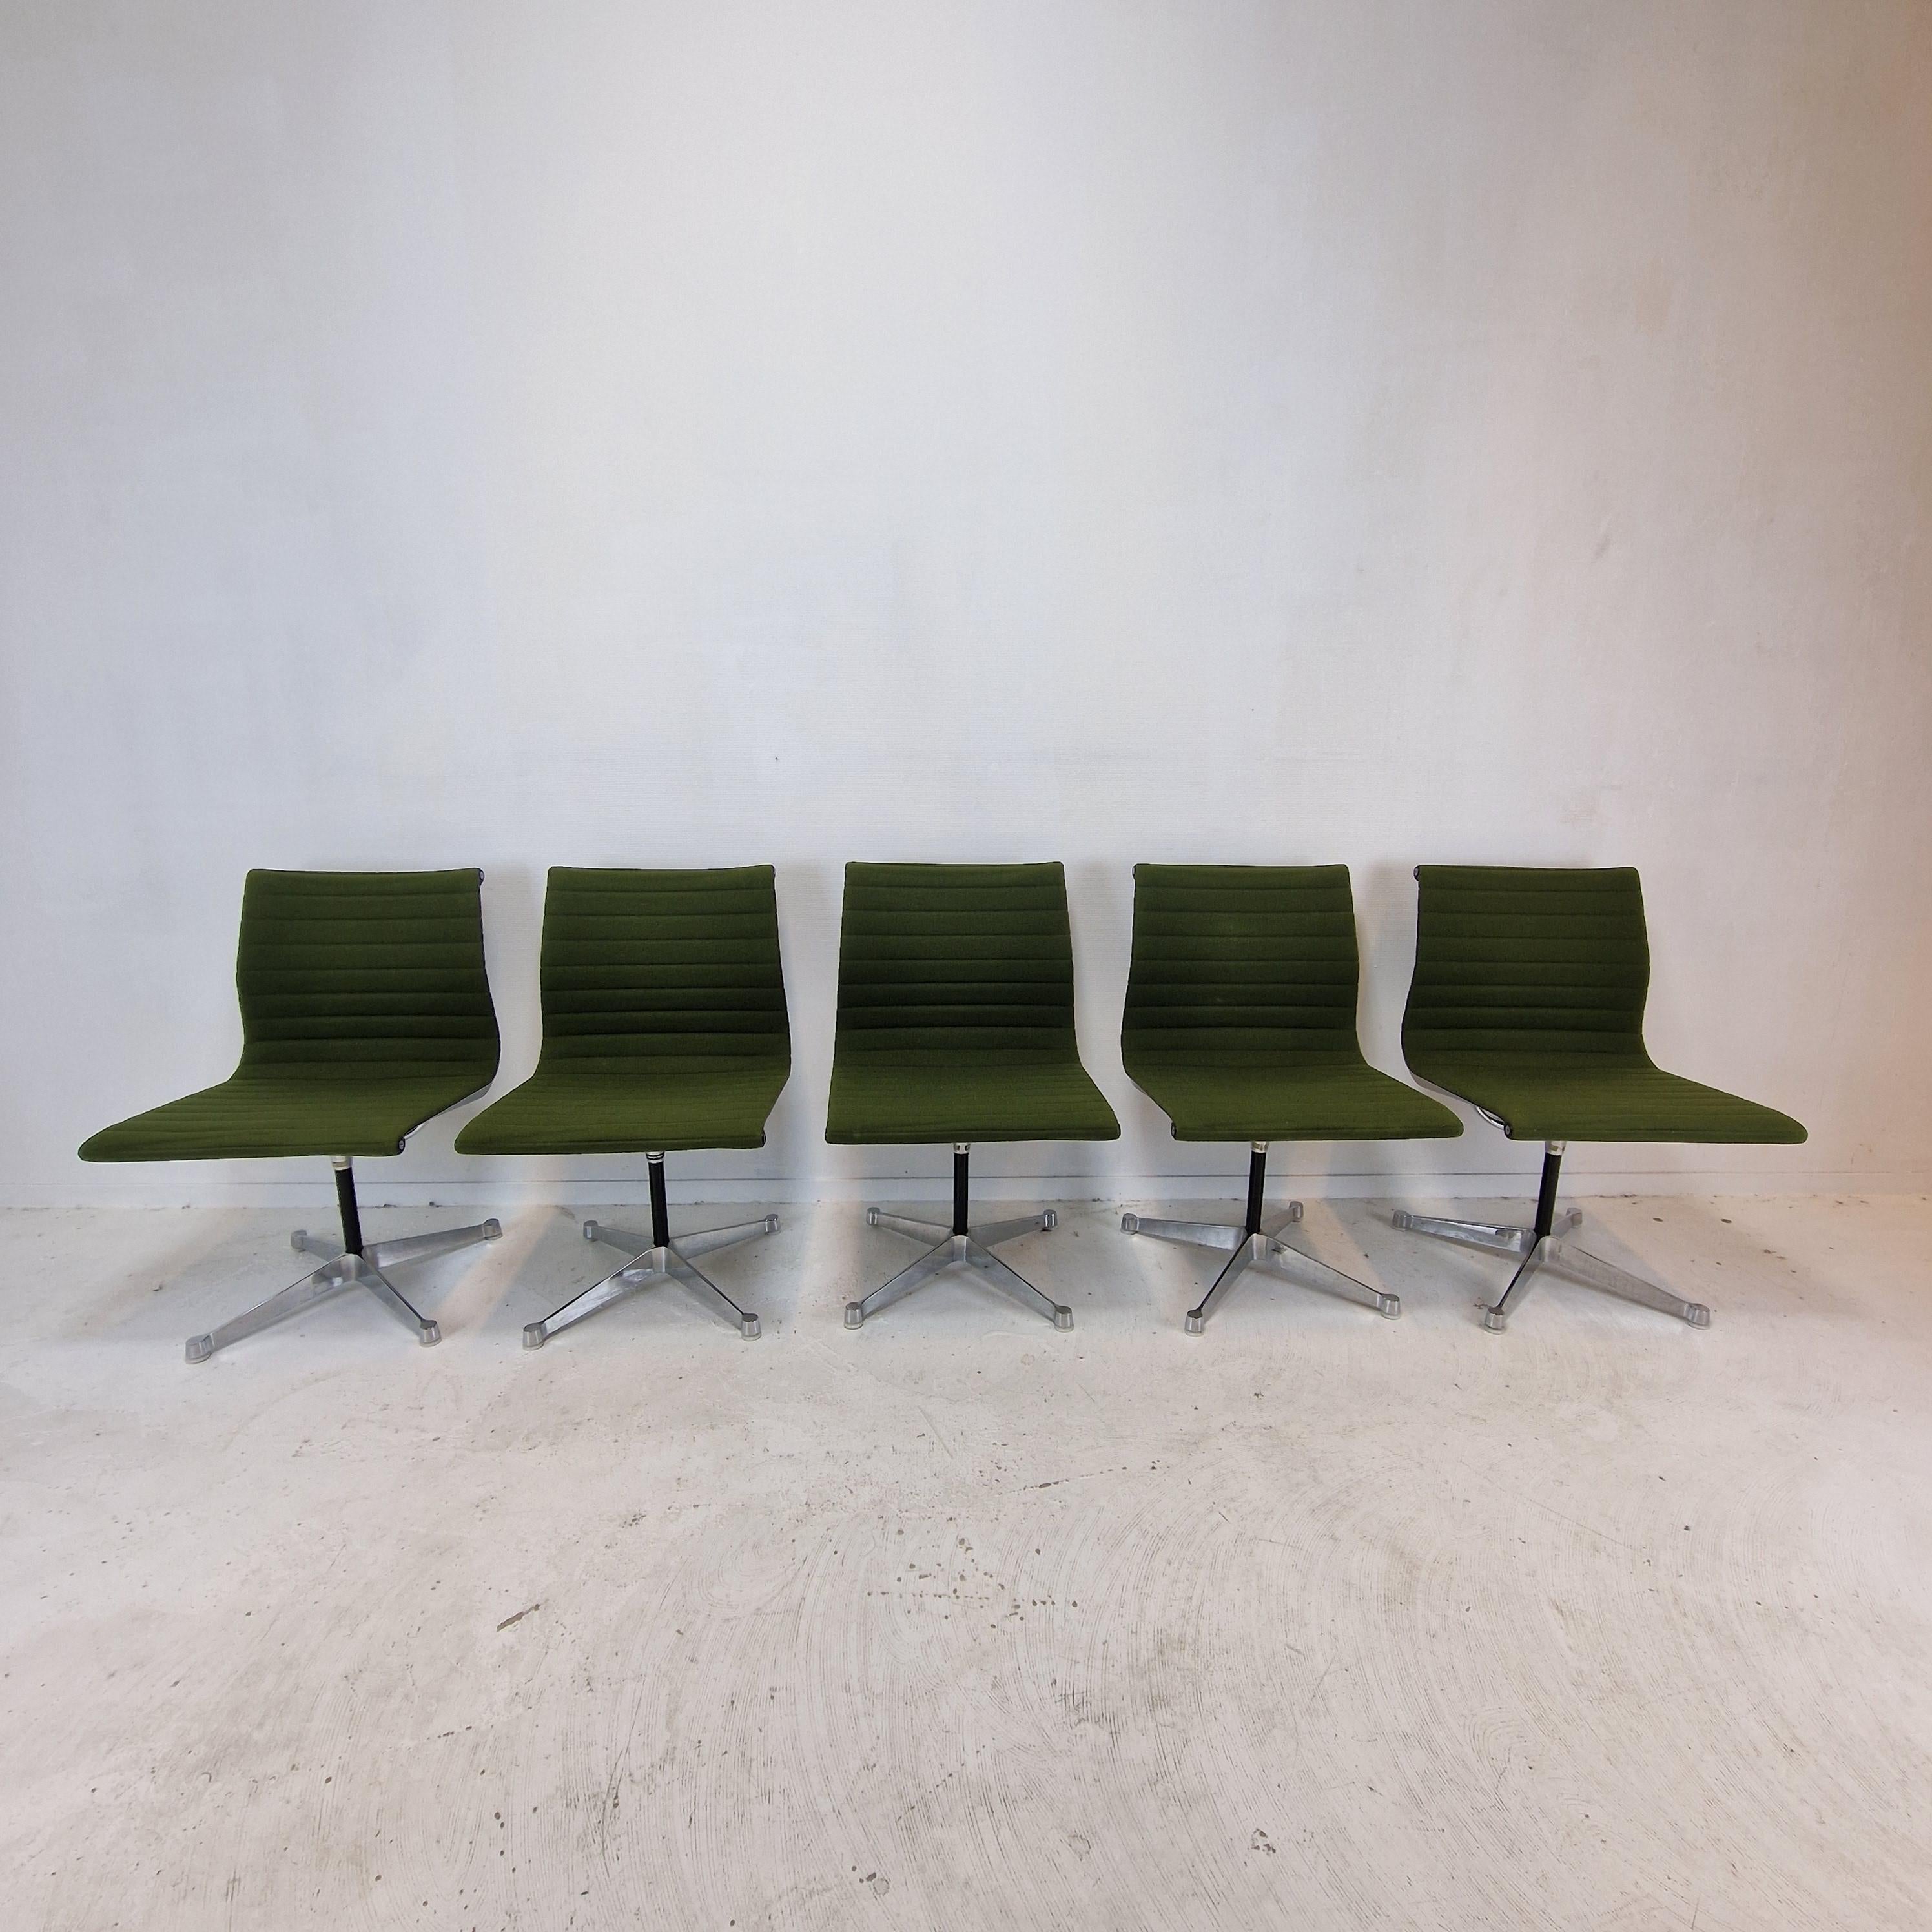 Très bel ensemble de 5 chaises EA105 d'origine.
Ces chaises pivotantes ont été conçues par Charles et Ray Eames et fabriquées par Herman Miller dans les années 70.

Ils sont équipés de la sellerie verte 